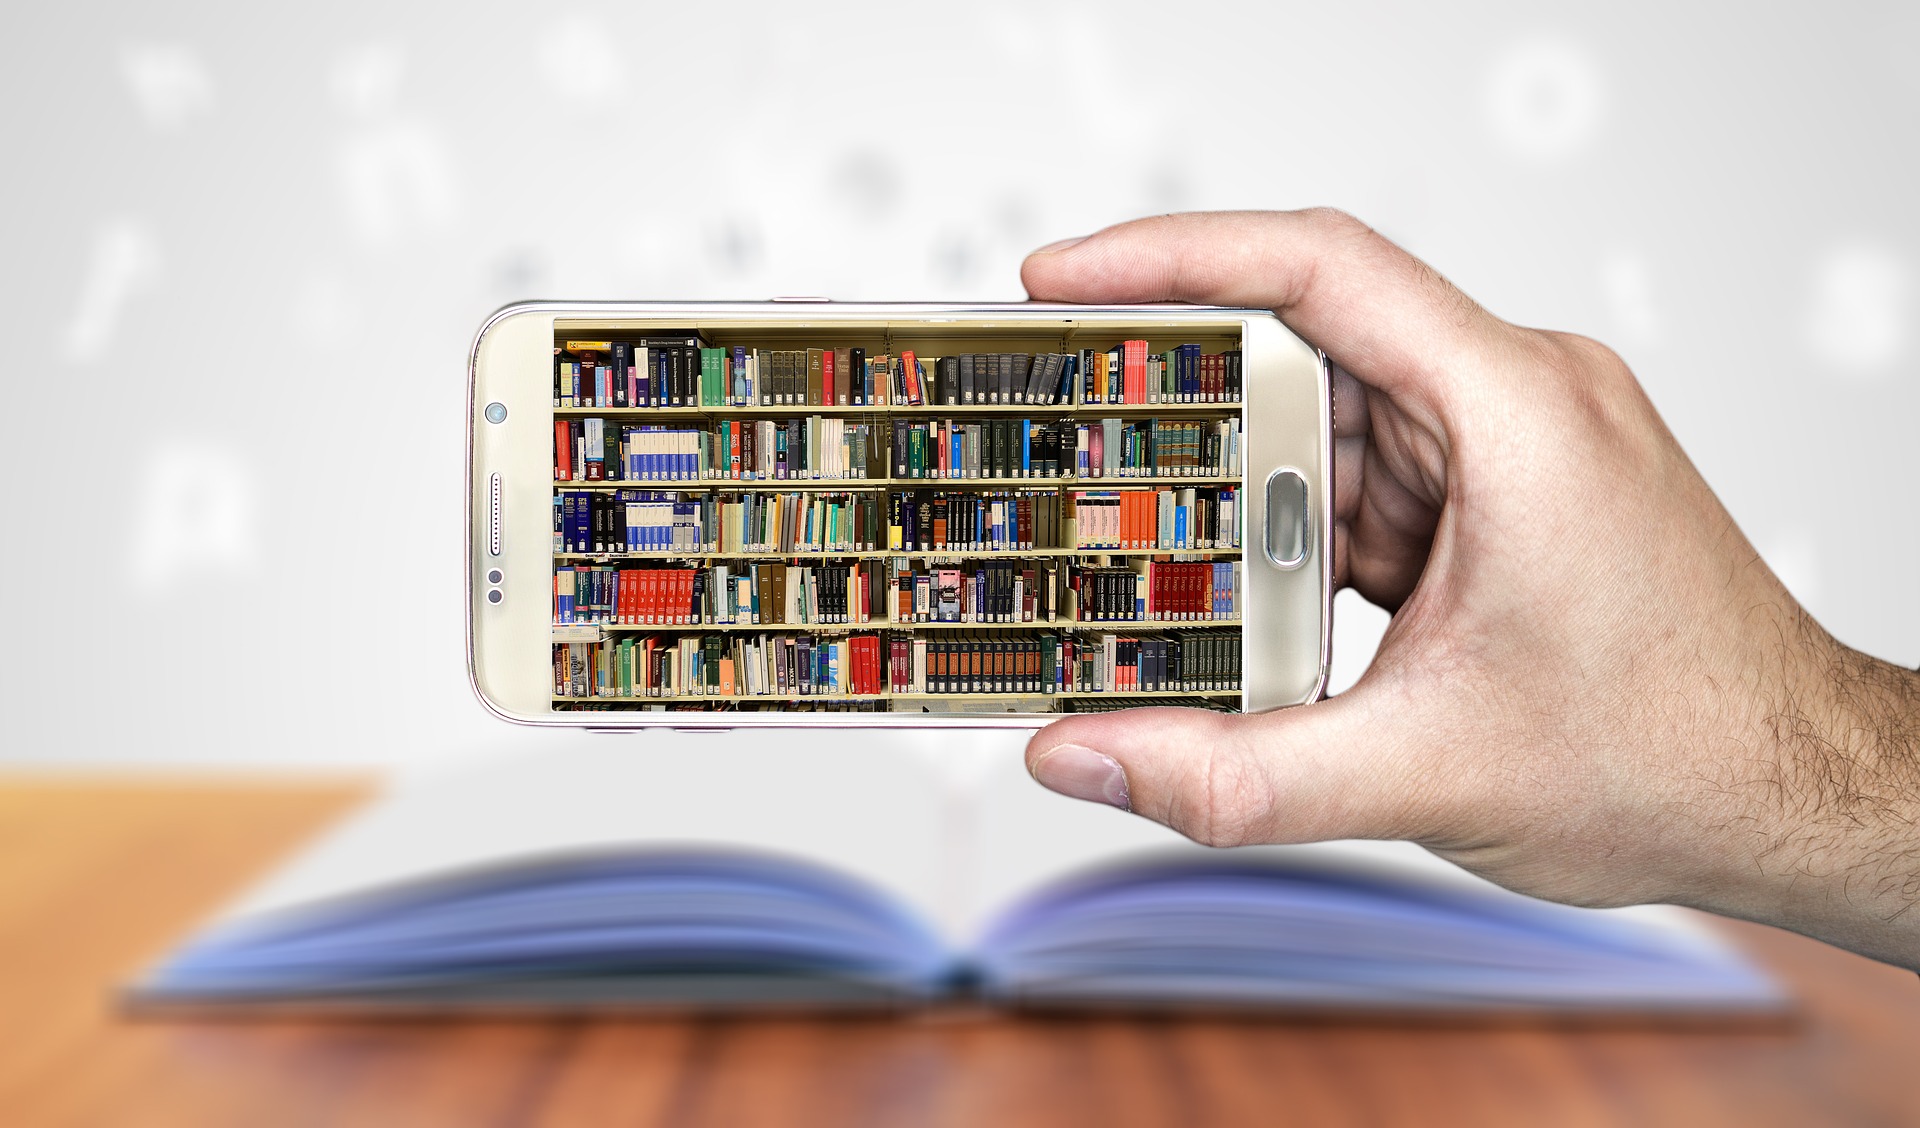 Eine Hand hält ein Smartphone, im Display ist ein volles Bücherregal zu sehen. Im Hintergrund liegt ein aufgeschlagenes Buch auf einem Tisch, aus dem Buchstaben herausfliegen.